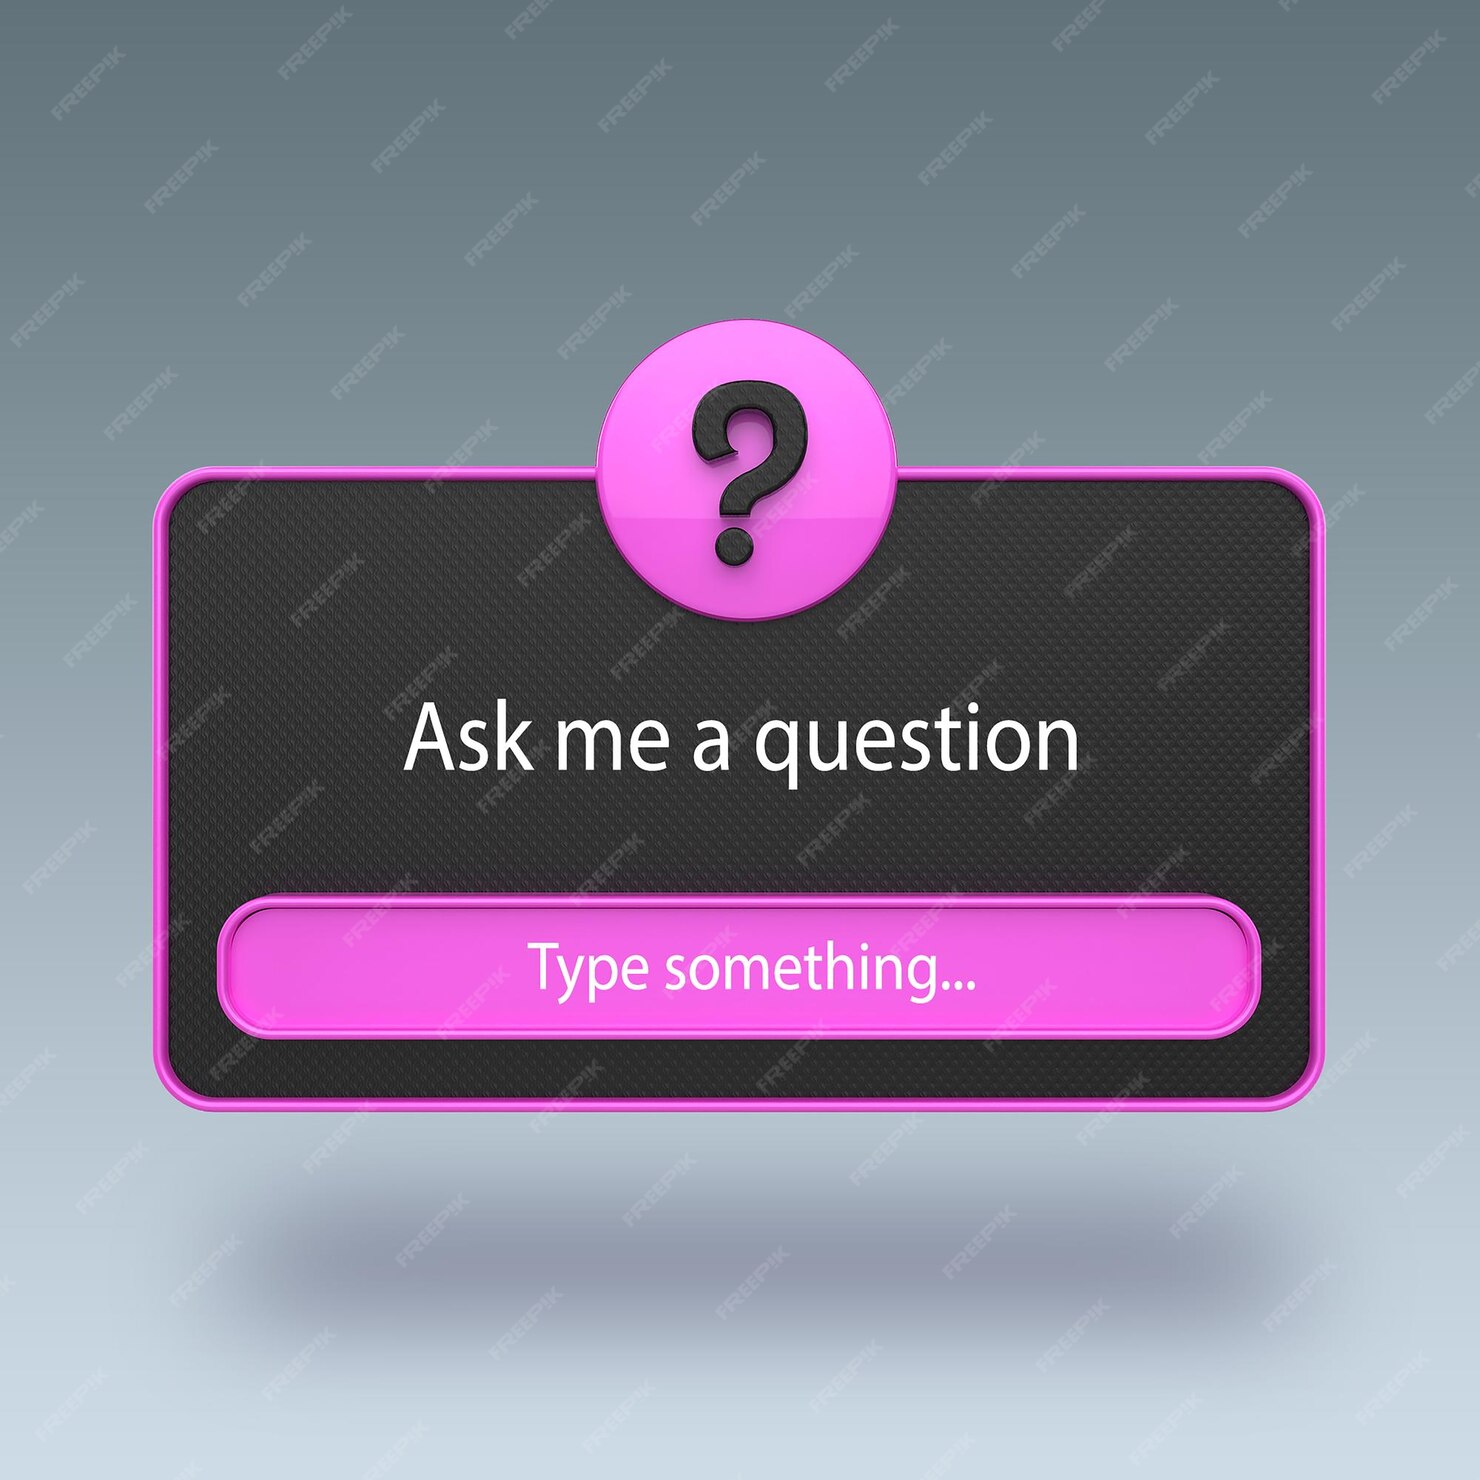 Premium PSD | 3d question engagement interface mockup